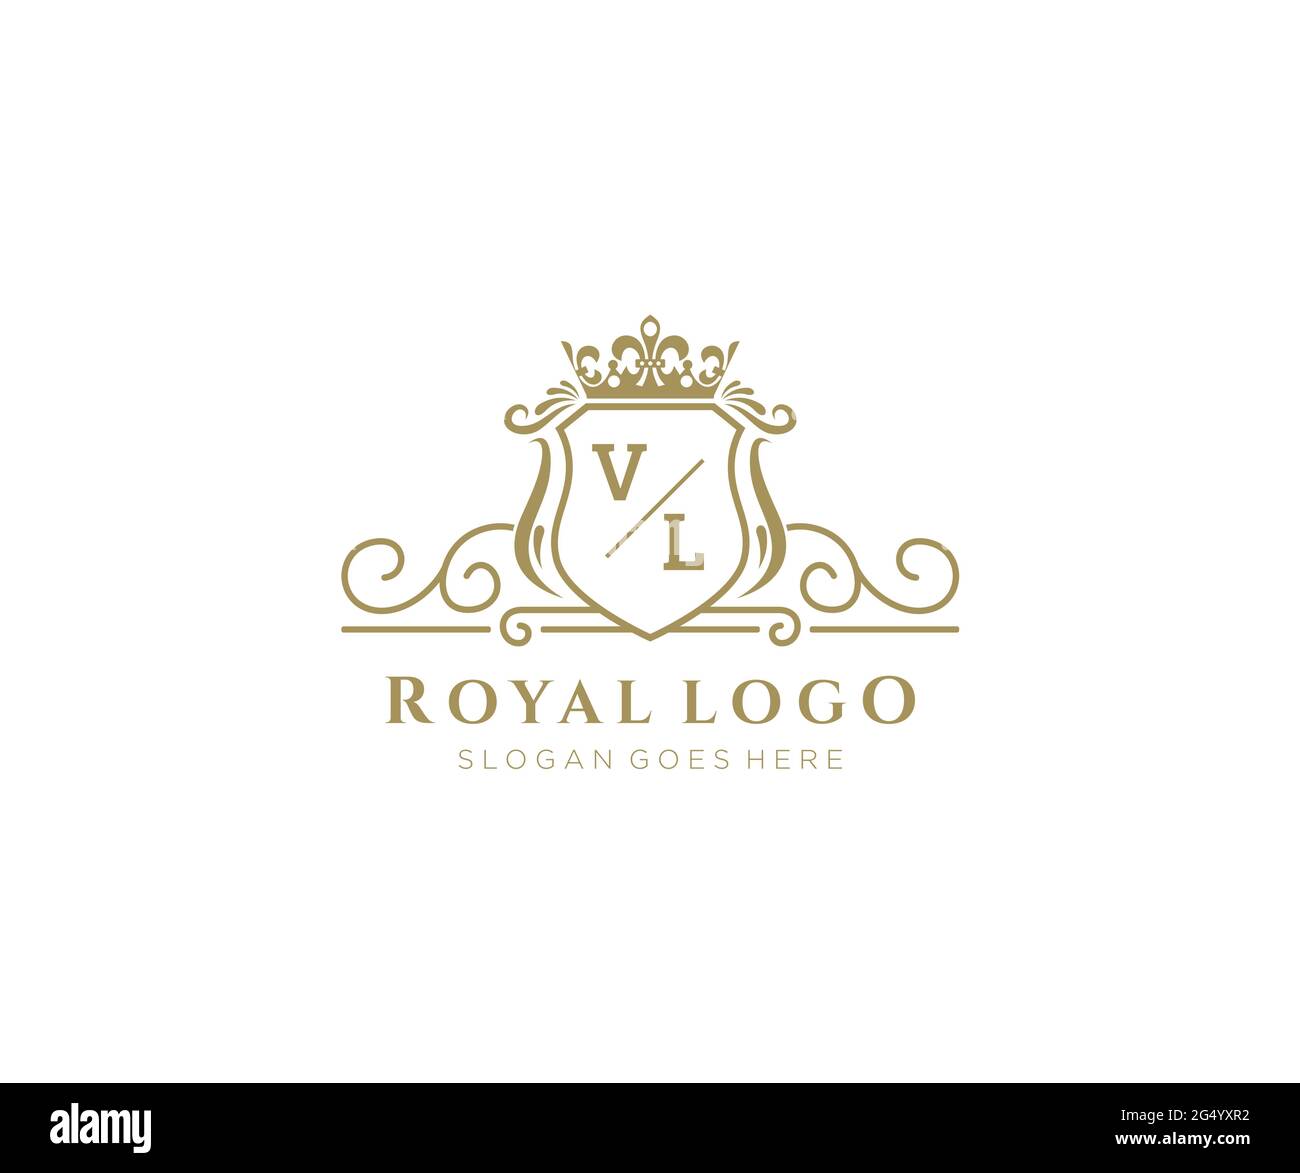 VL Letter Royal Luxury Logo Template In Vector Art For Restaurant